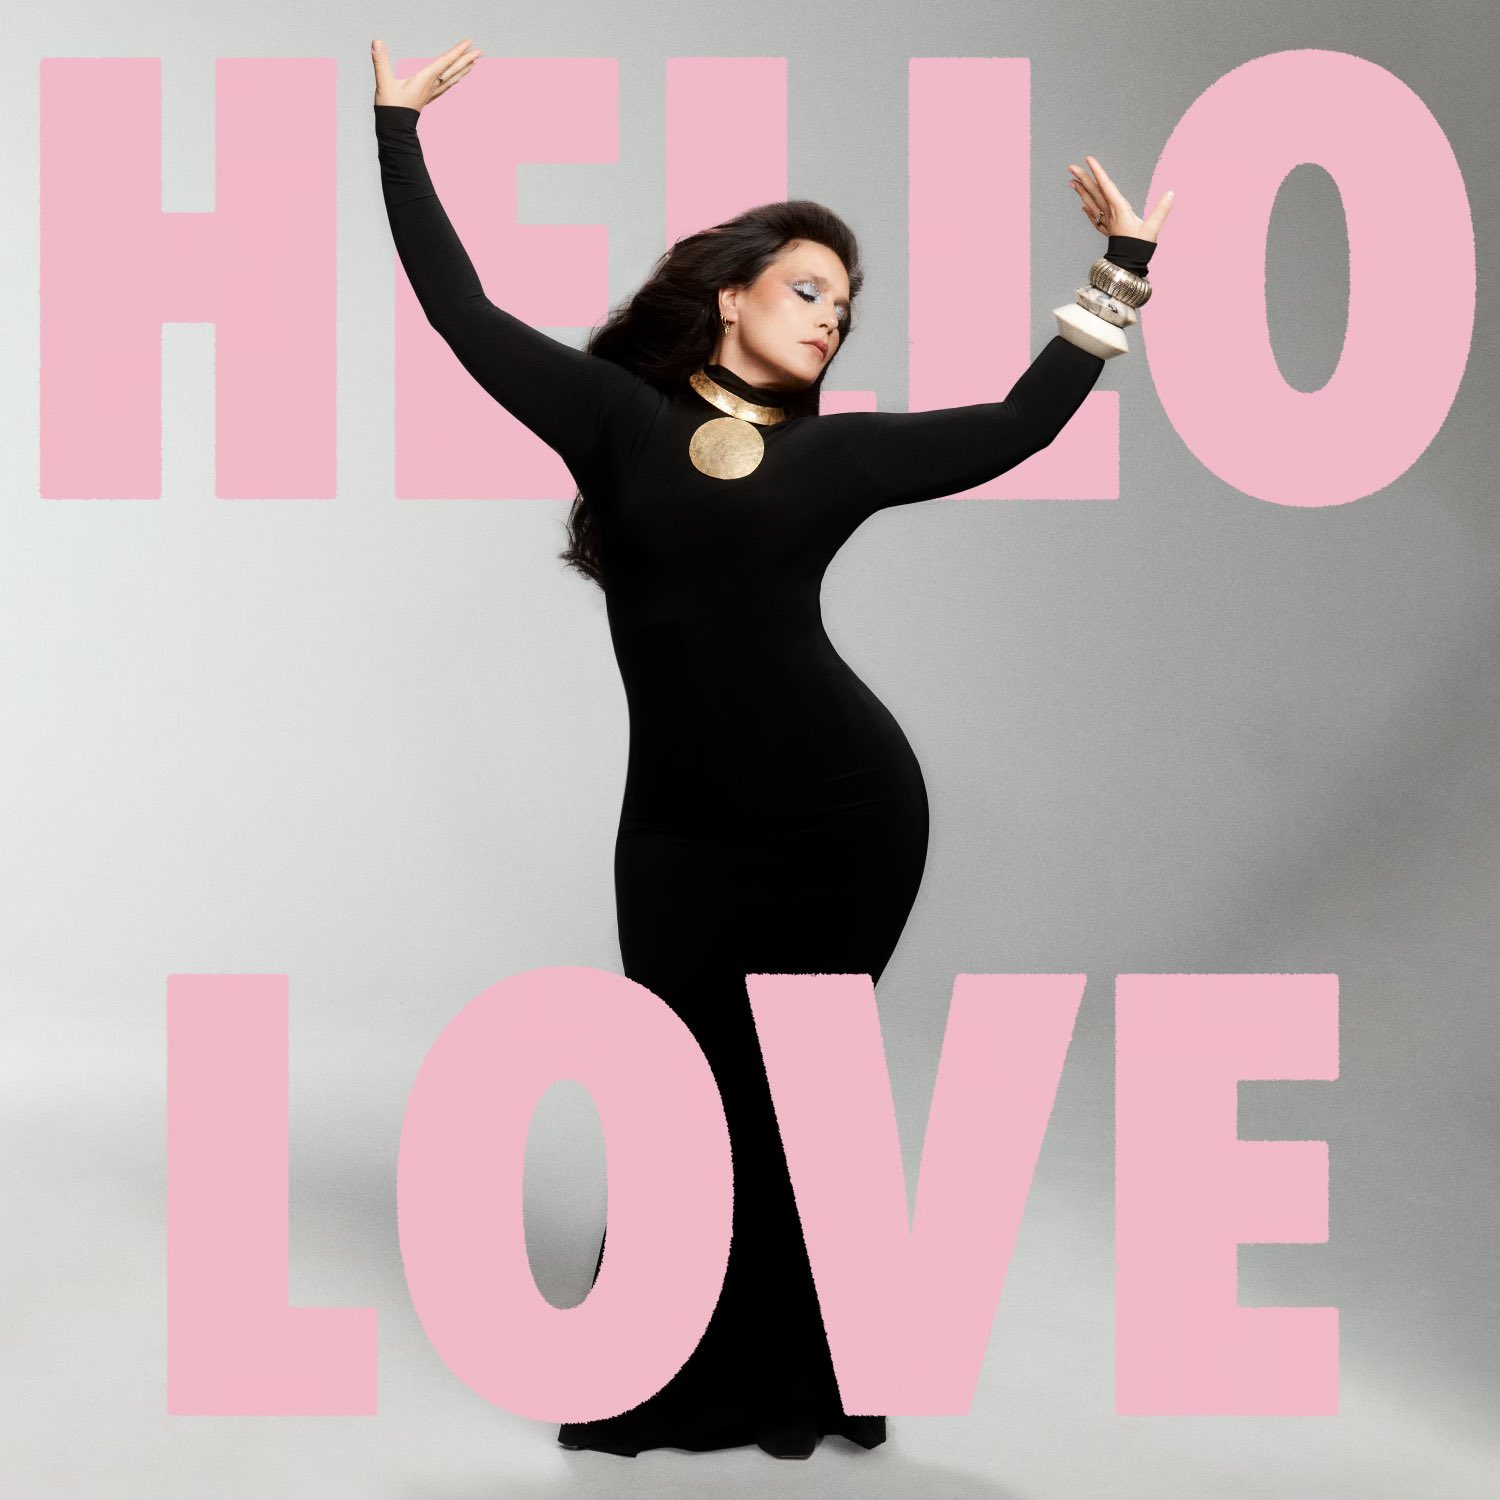 Jessie Ware — Hello Love cover artwork